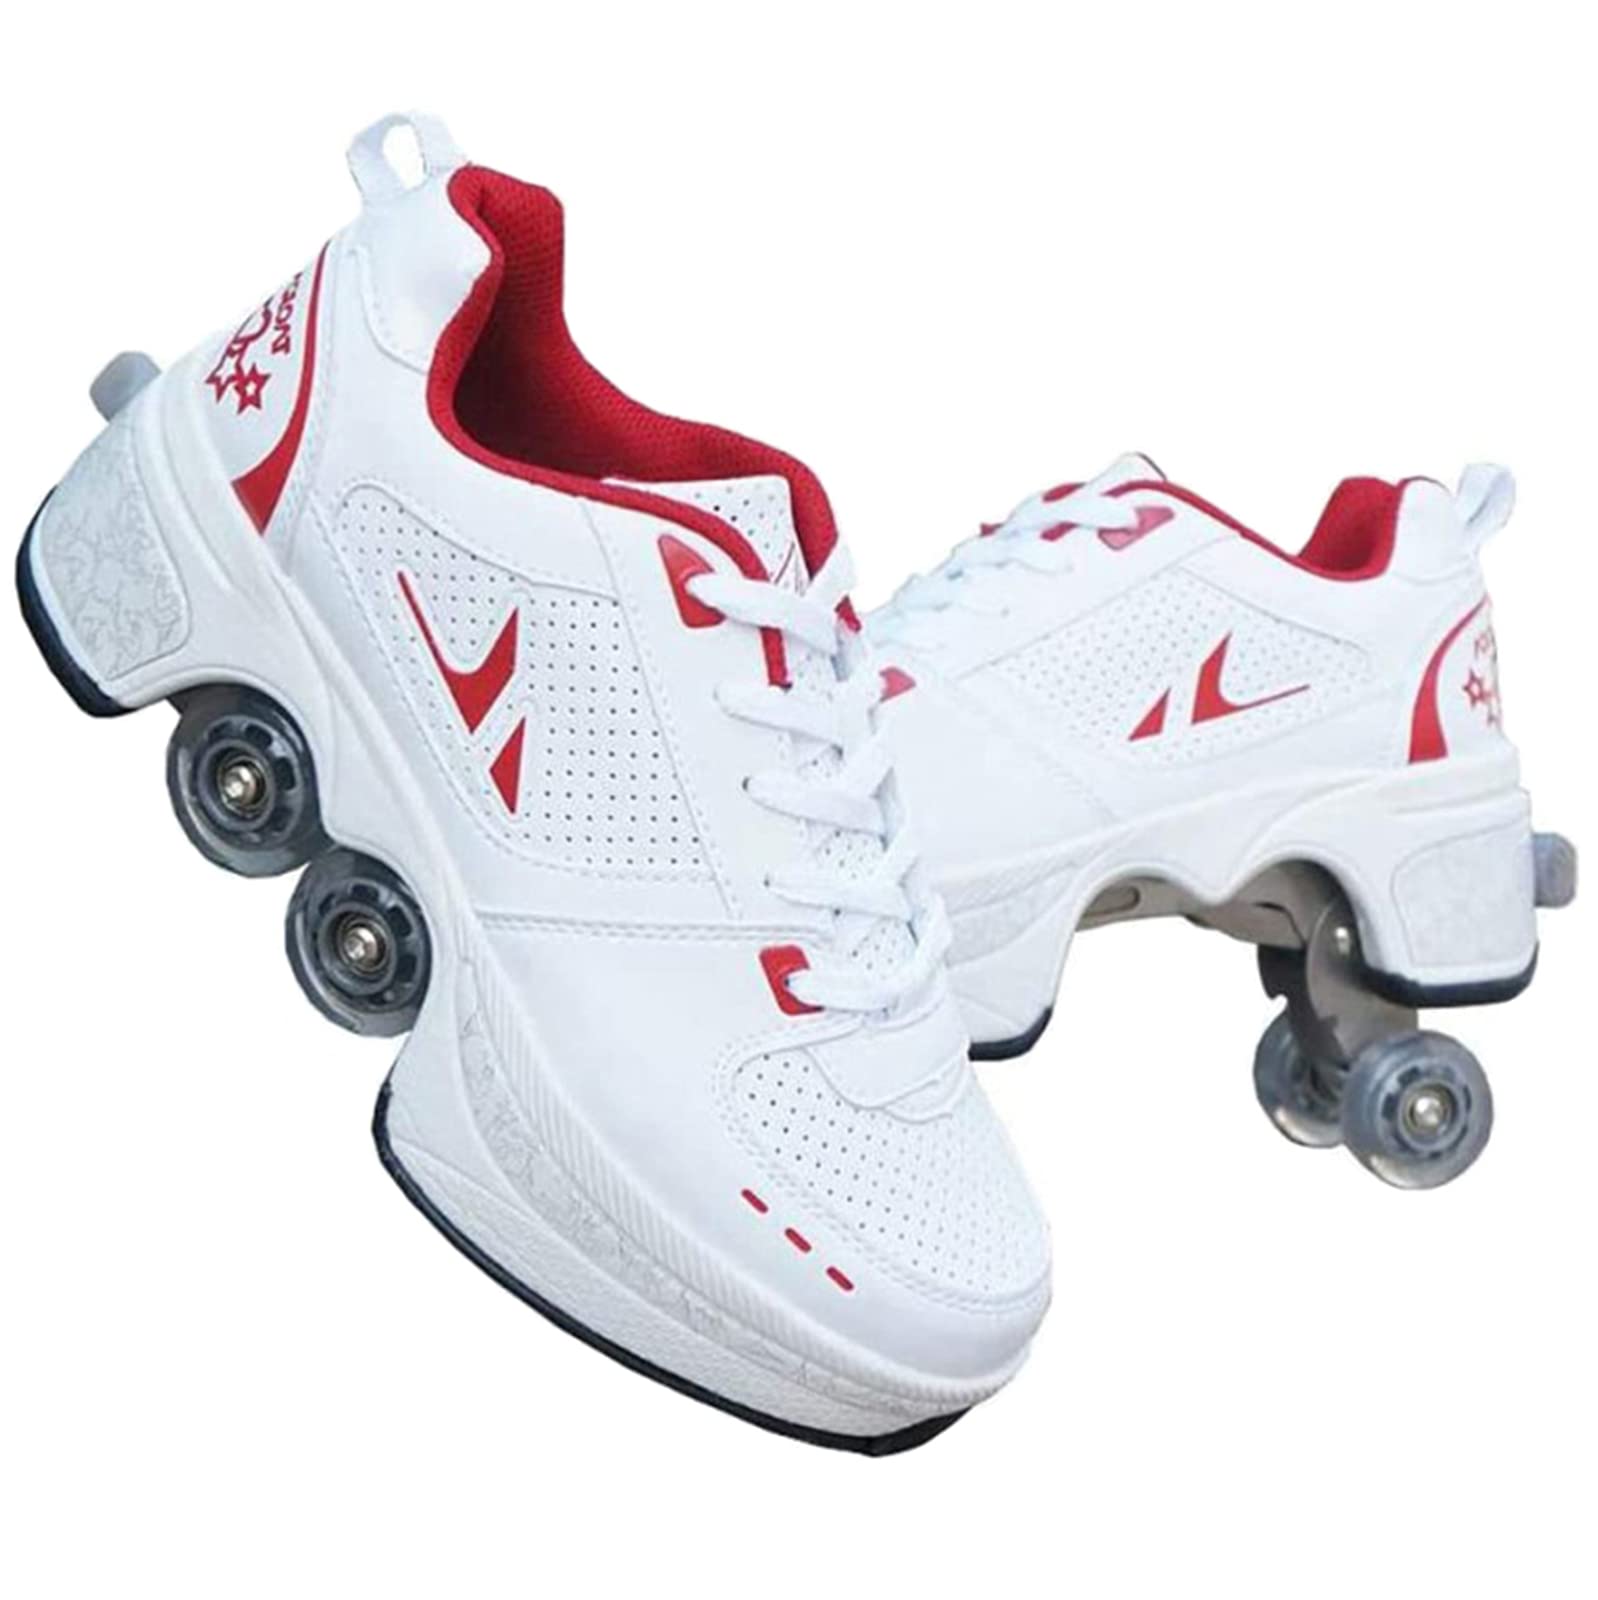 HUOQILIN Pulley Ice Skates,Multifunktionale Verformung Rolle Schuhe Unsichtbare 4-Rad-Rollschuhe Skate Roller Skating Kinder Outdoor-Sport Für Erwachsene Unisex,Red-34